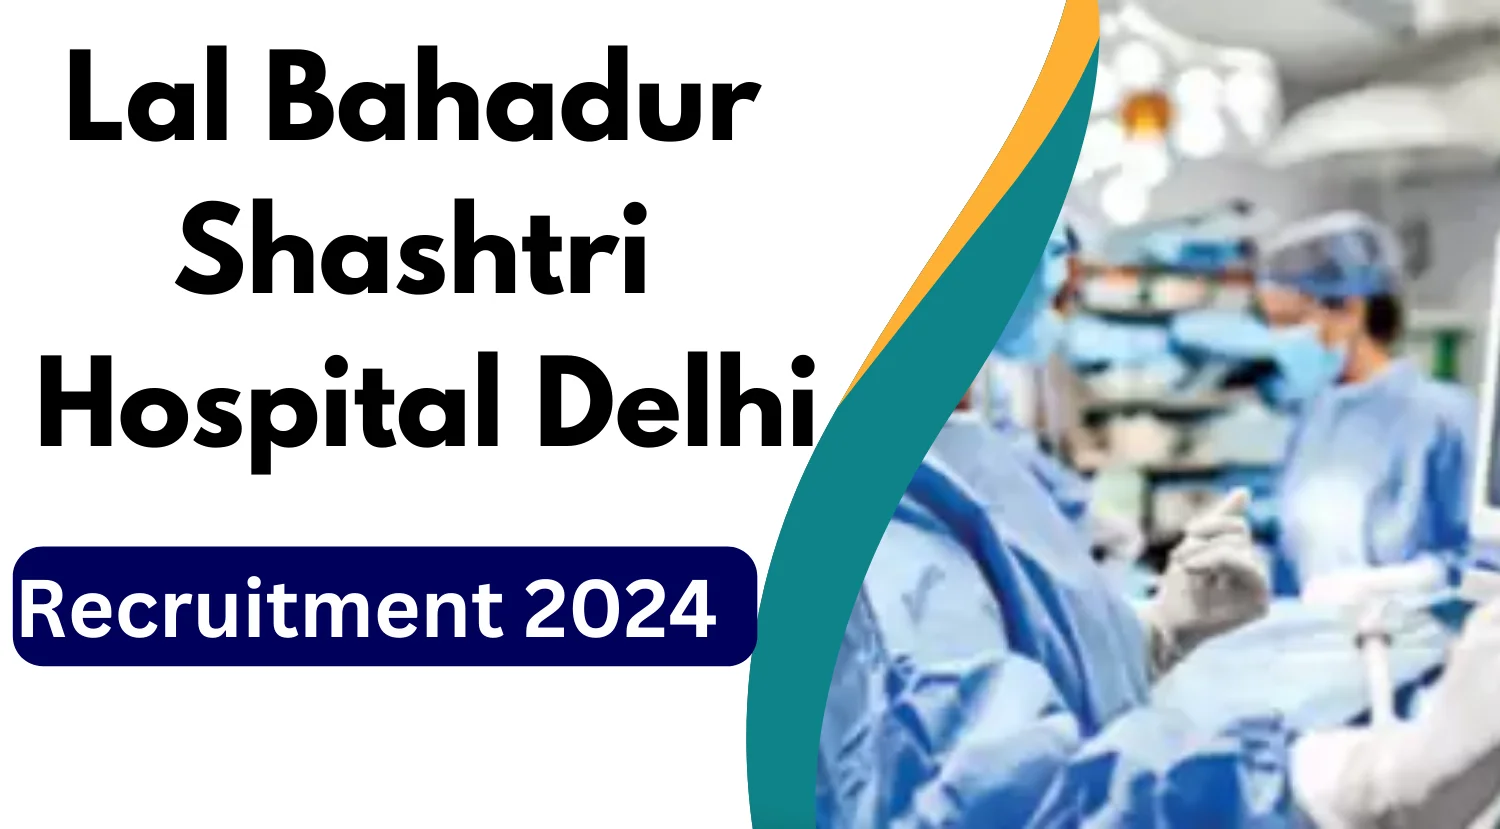 LBS Hospital Delhi Recruitment 2024